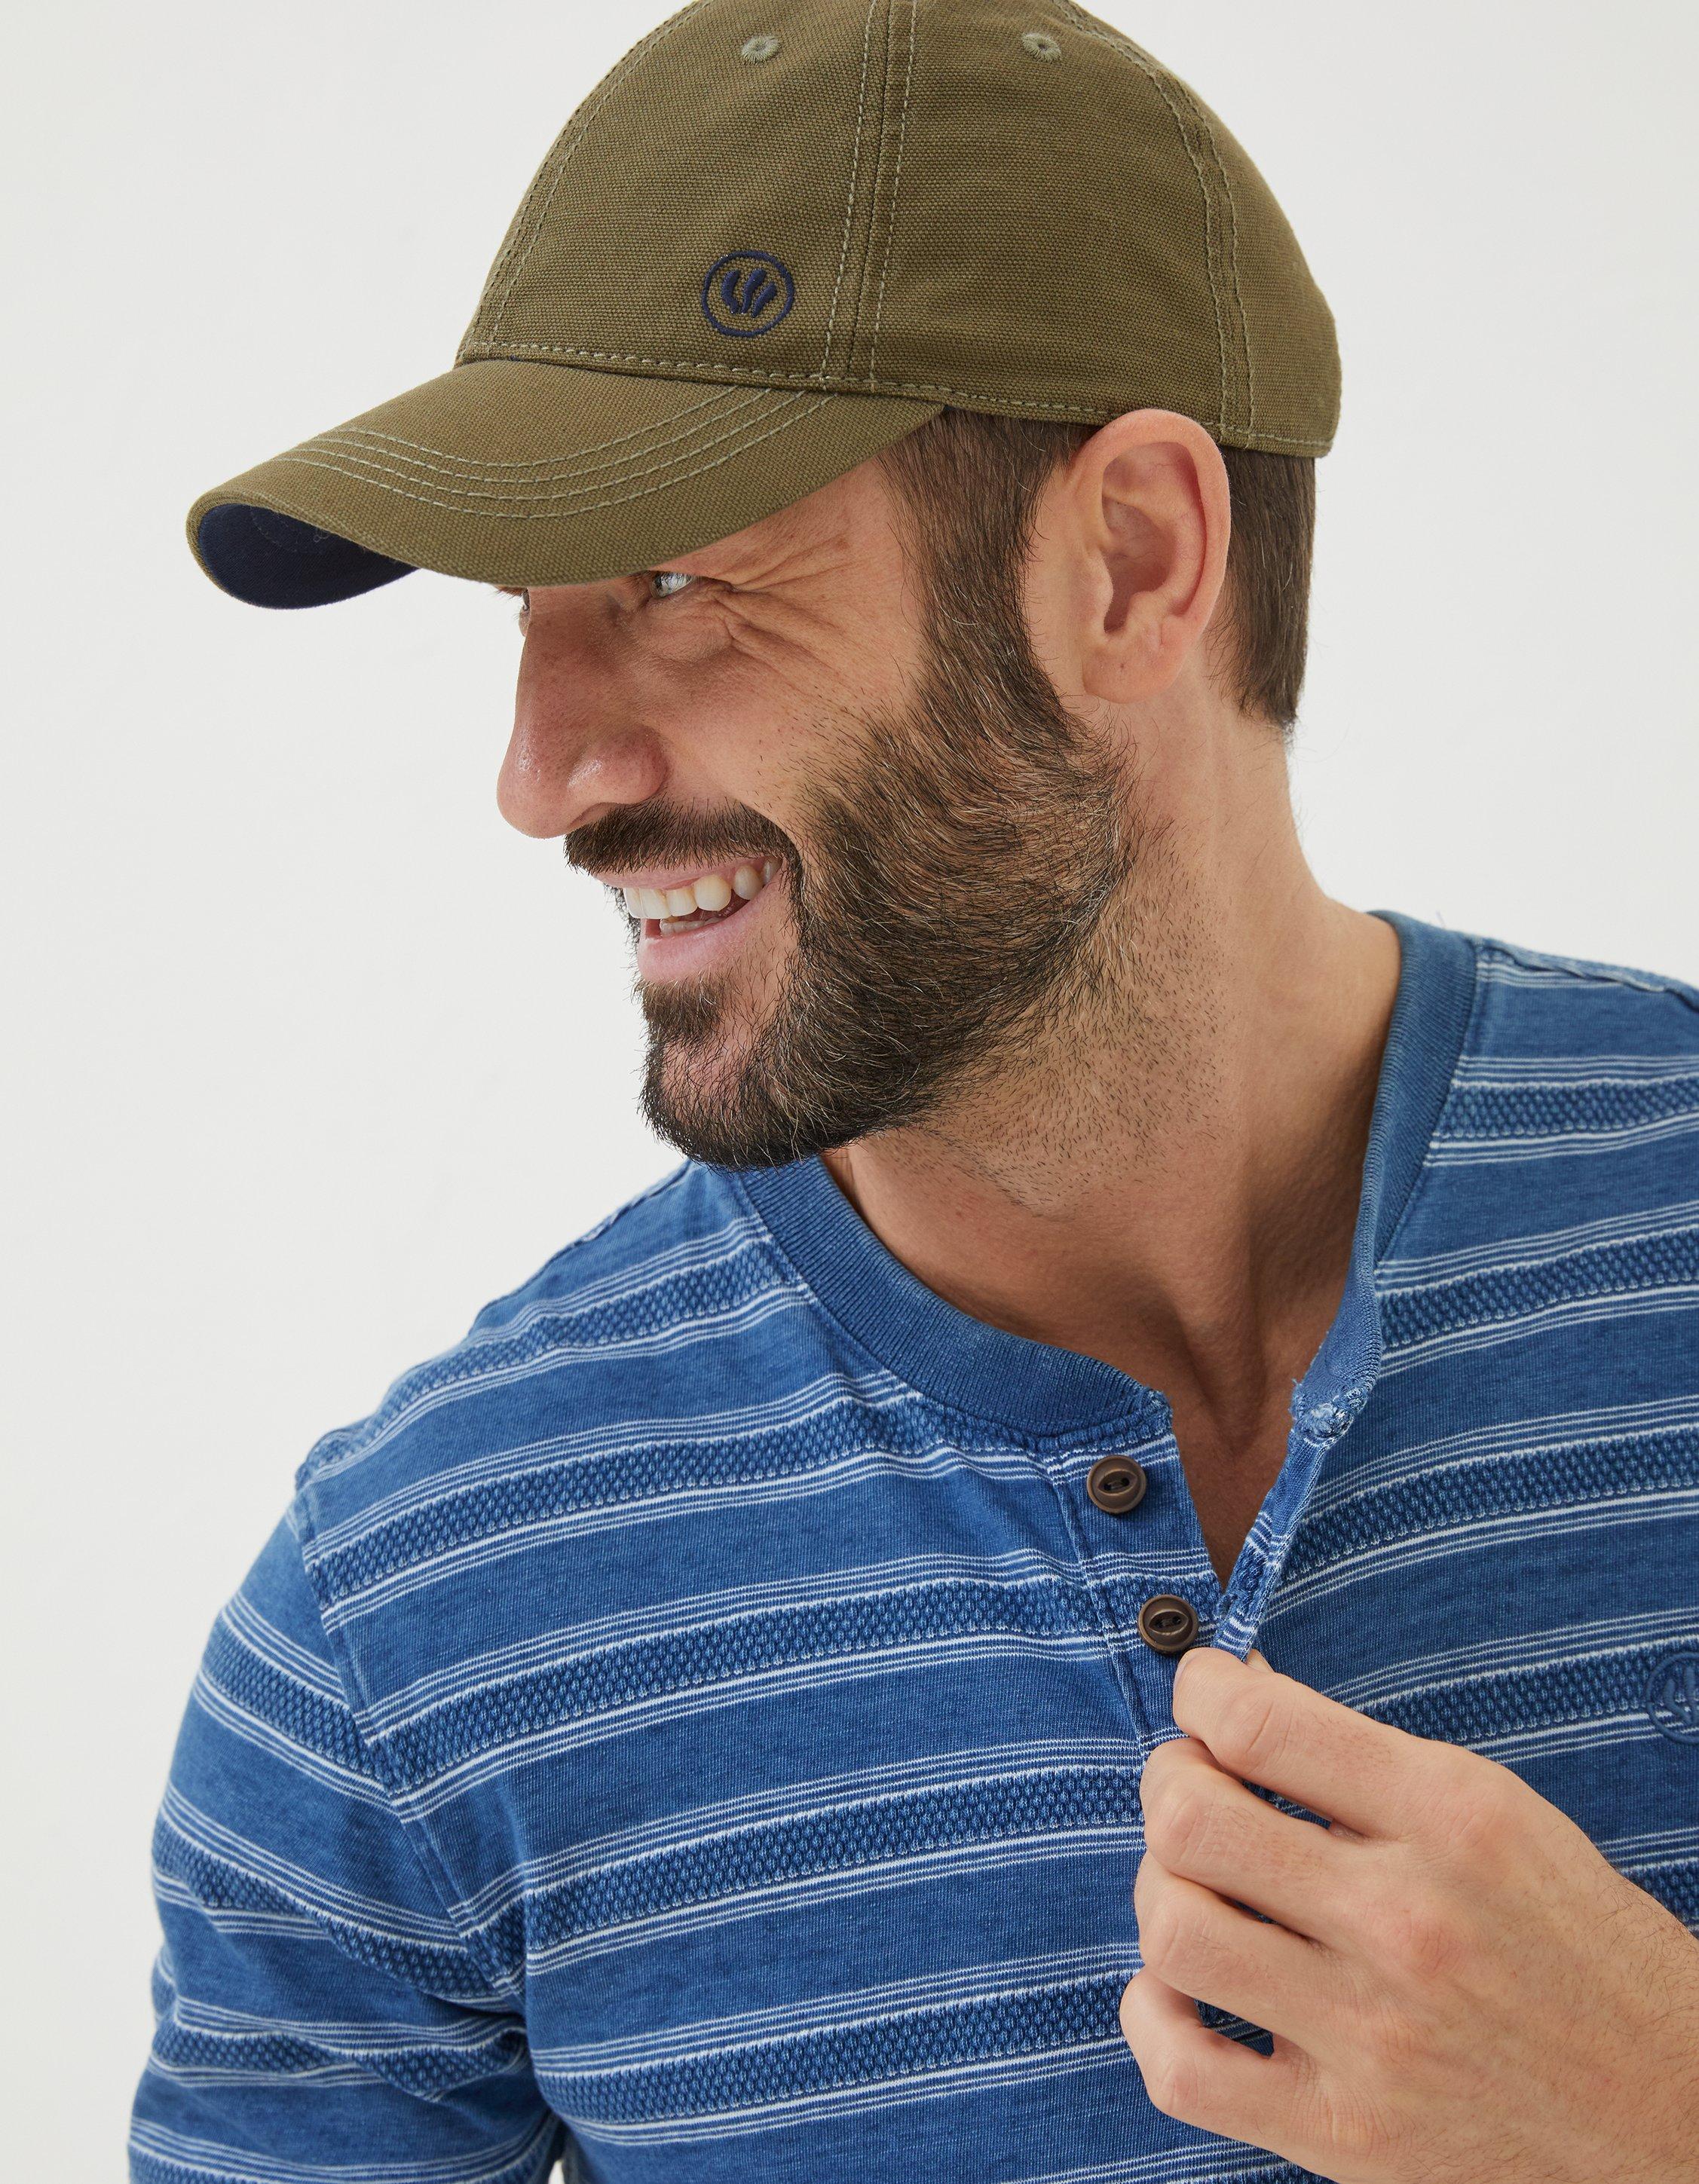 Men's Hats & Caps, Men's Accessories